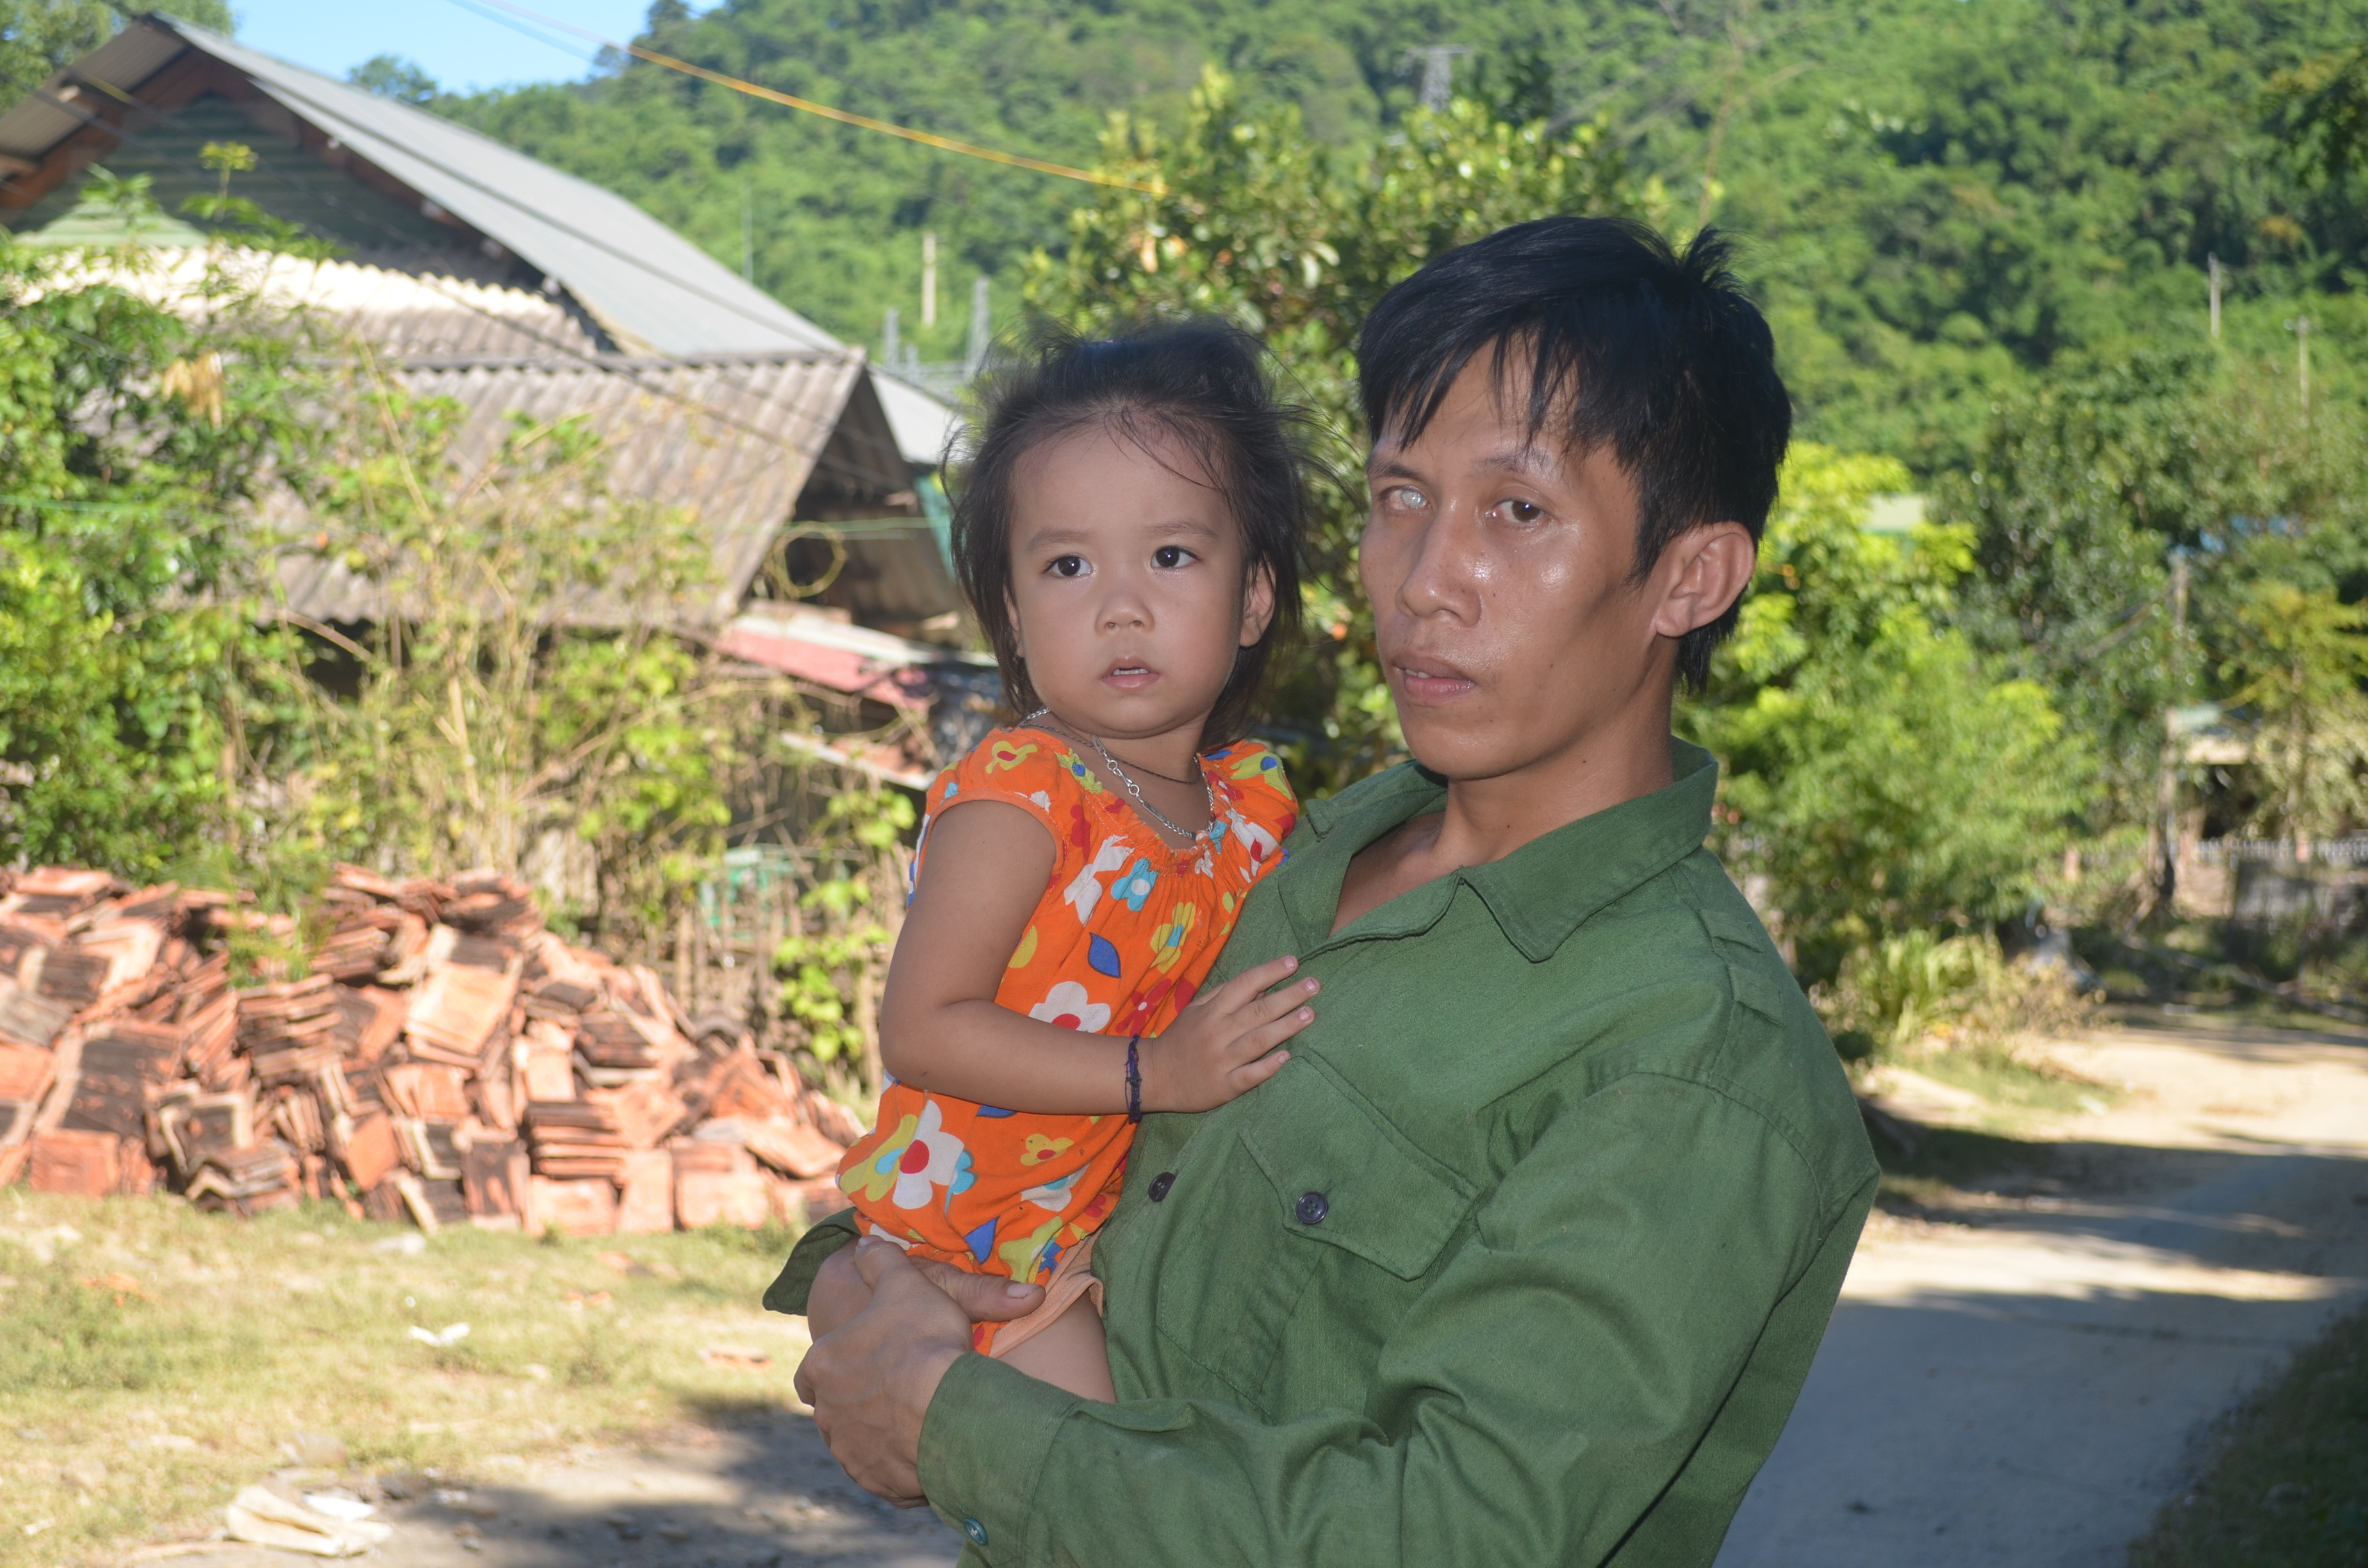 Anh Lô Văn Cáng, một trong những hộ dân ở làng tái định cư Bản Vẽ bị mất nhà. Hiện nay, anh Cáng cùng vợ và 2 con nhỏ sống nhờ trong chsi bếp của người thân. Anh thẫn thờ khi nhắc 